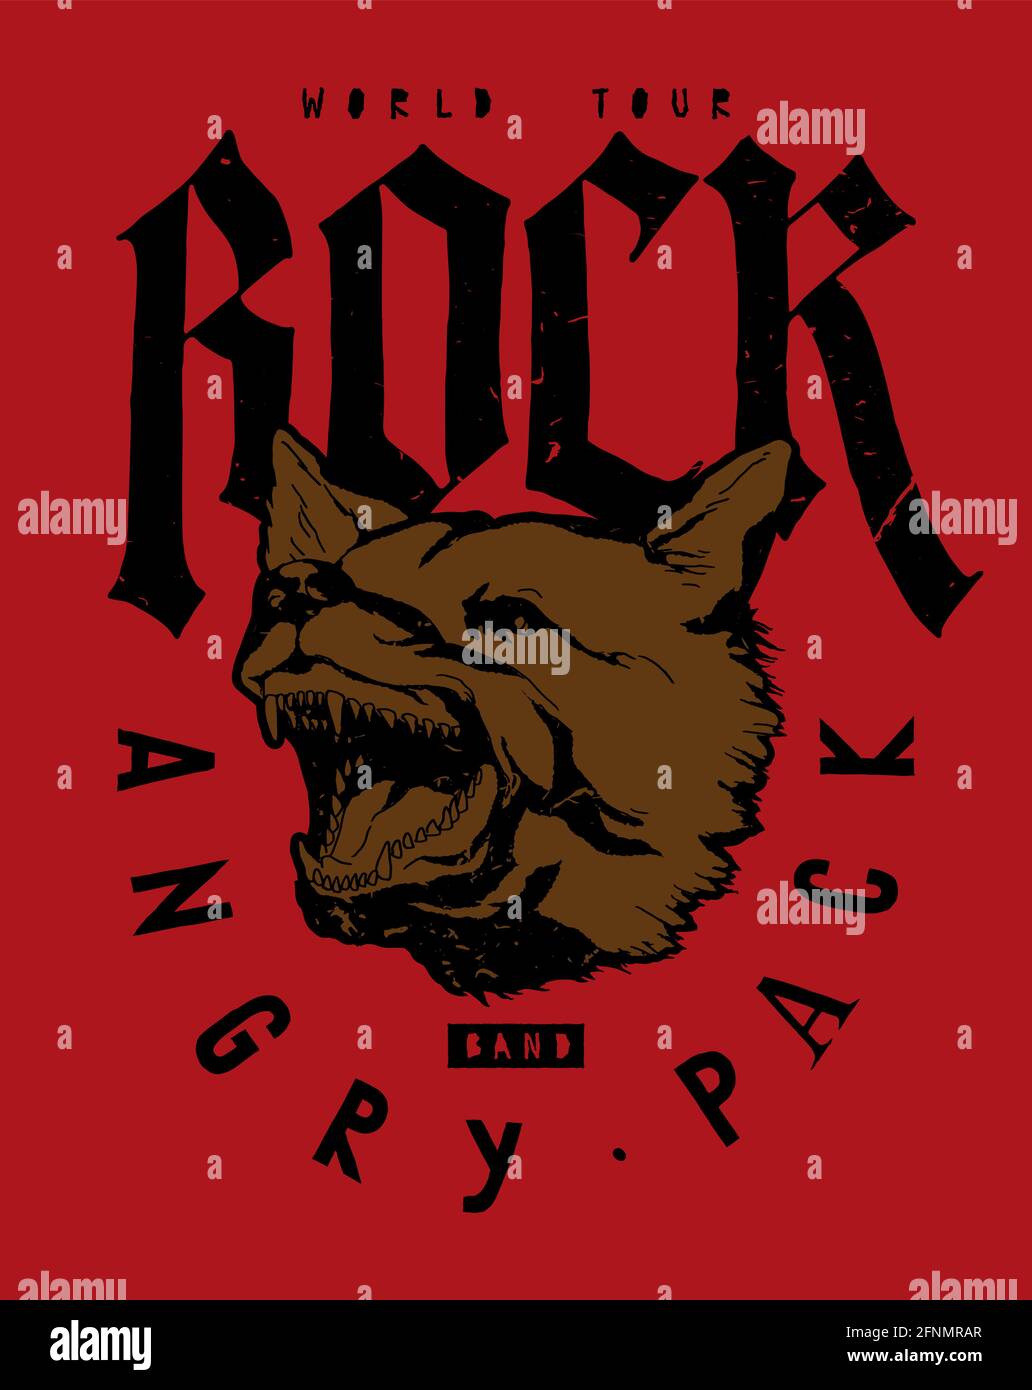 Visite du monde du groupe de musique rock. Tête de chien aboyant. Imprimé t-shirt typographique style gothique. Illustration de Vecteur